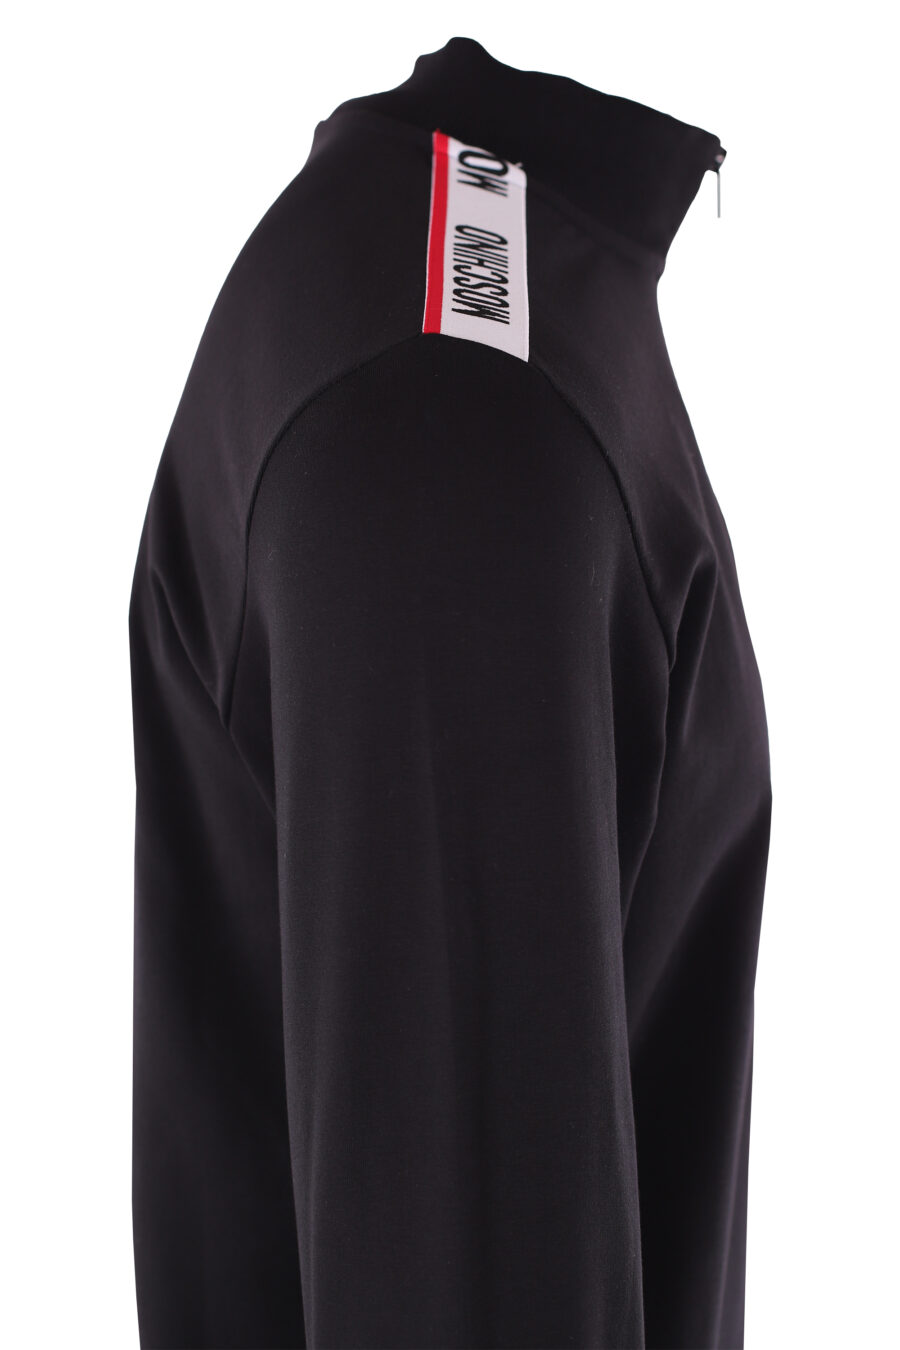 Sudadera negra cuello alto con logo en mangas - IMG 6494